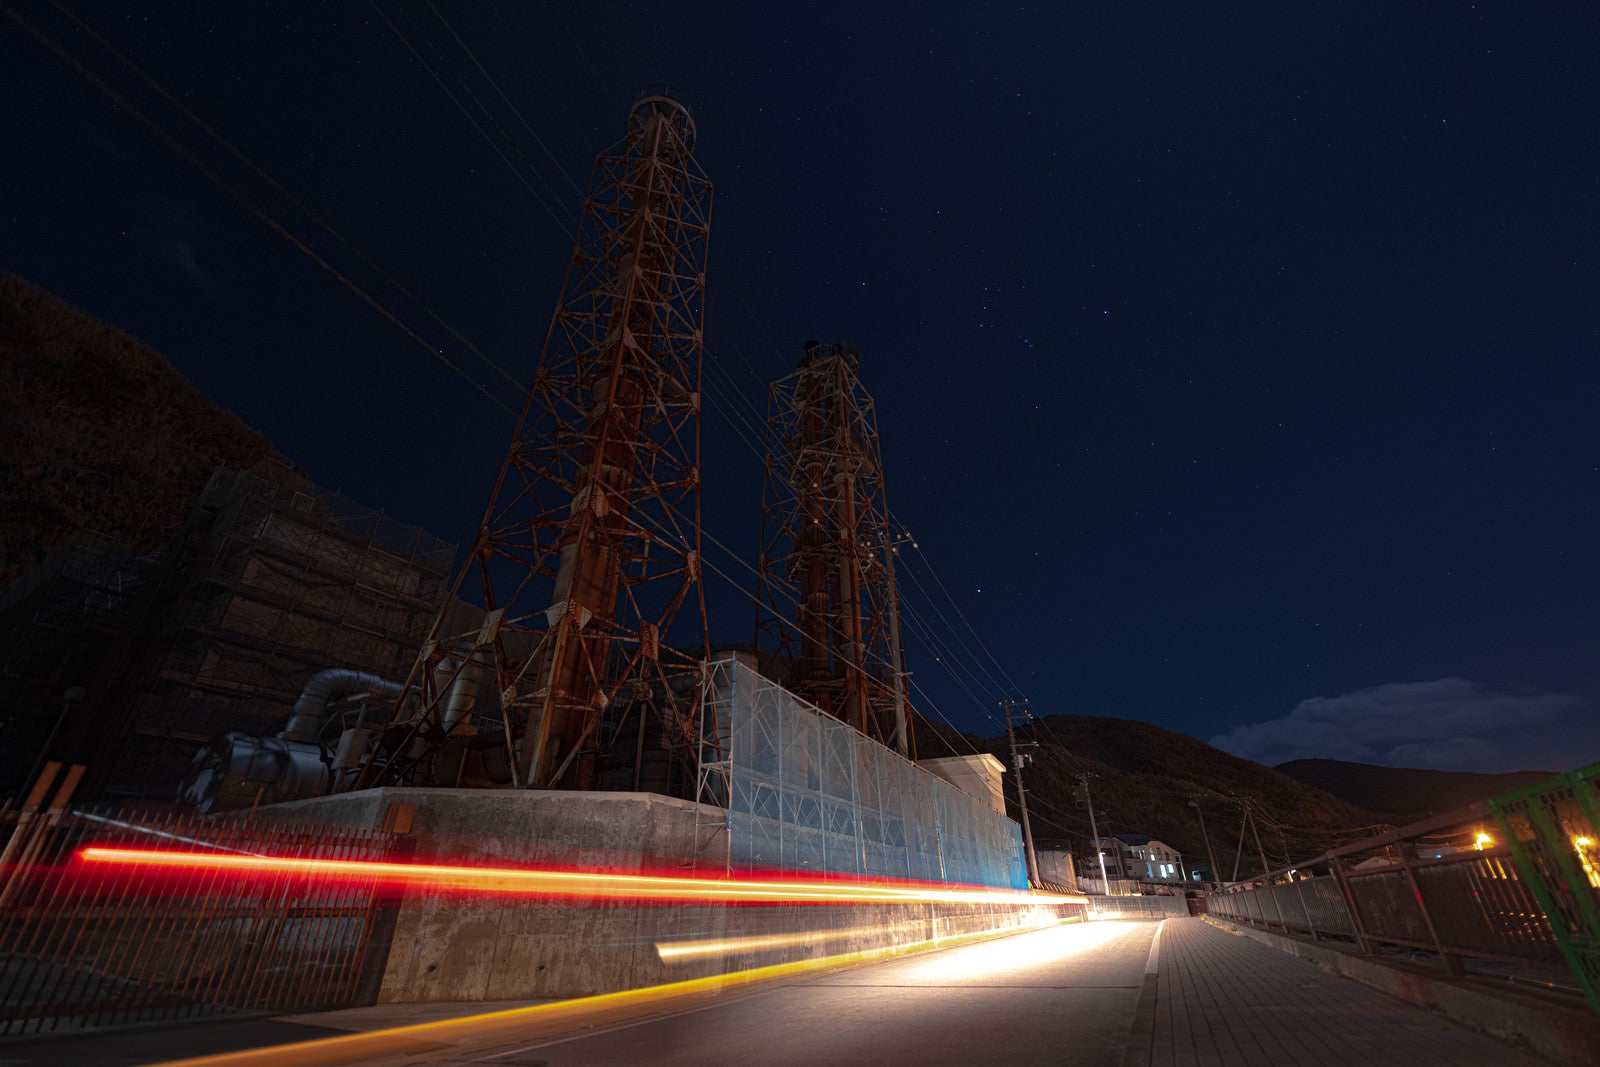 「神津本道を走る車の光跡と工場夜景」の写真